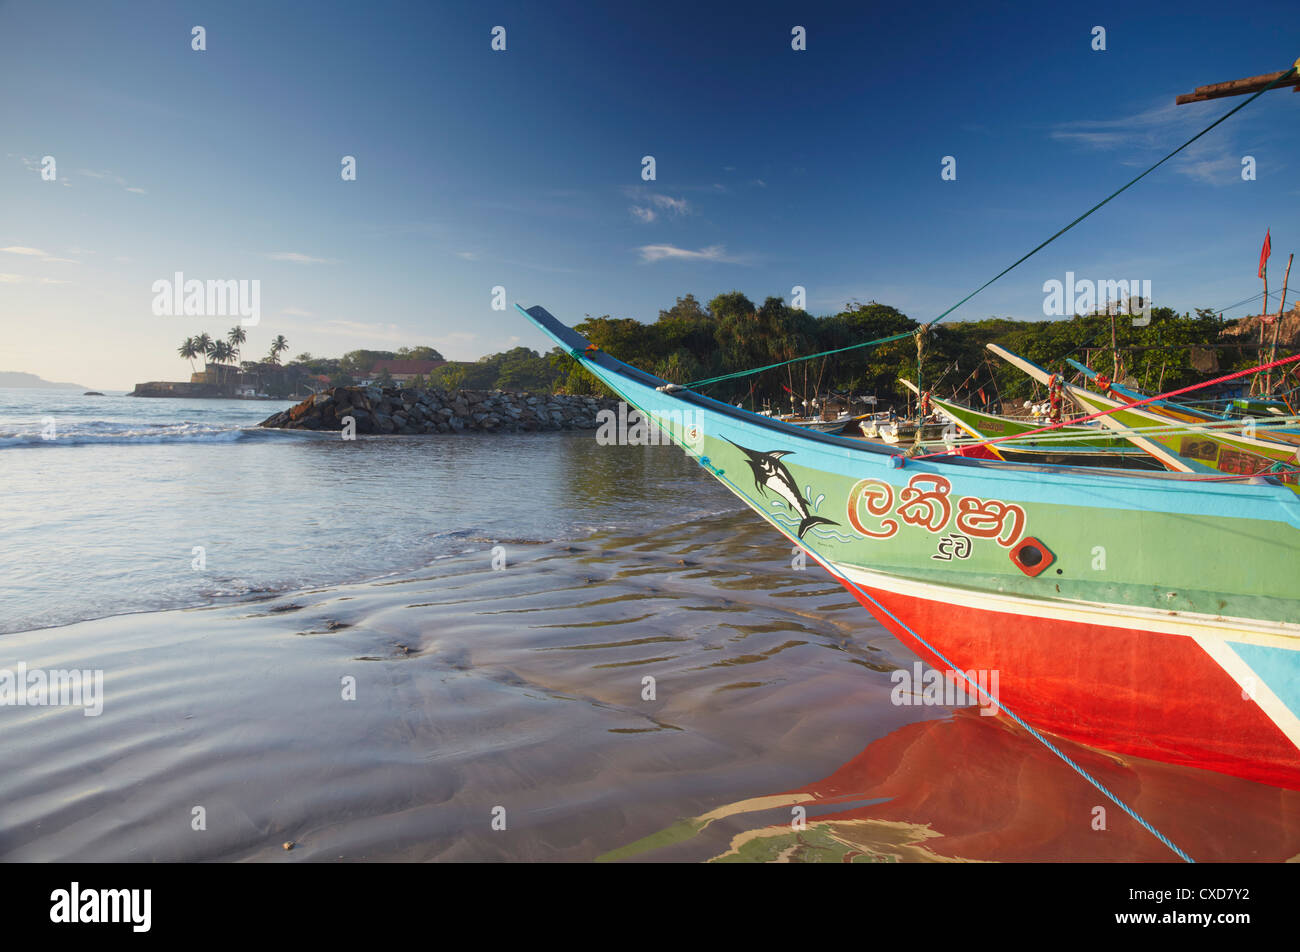 Bateau de pêche, Galle, Province du Sud, Sri Lanka, Asie Banque D'Images